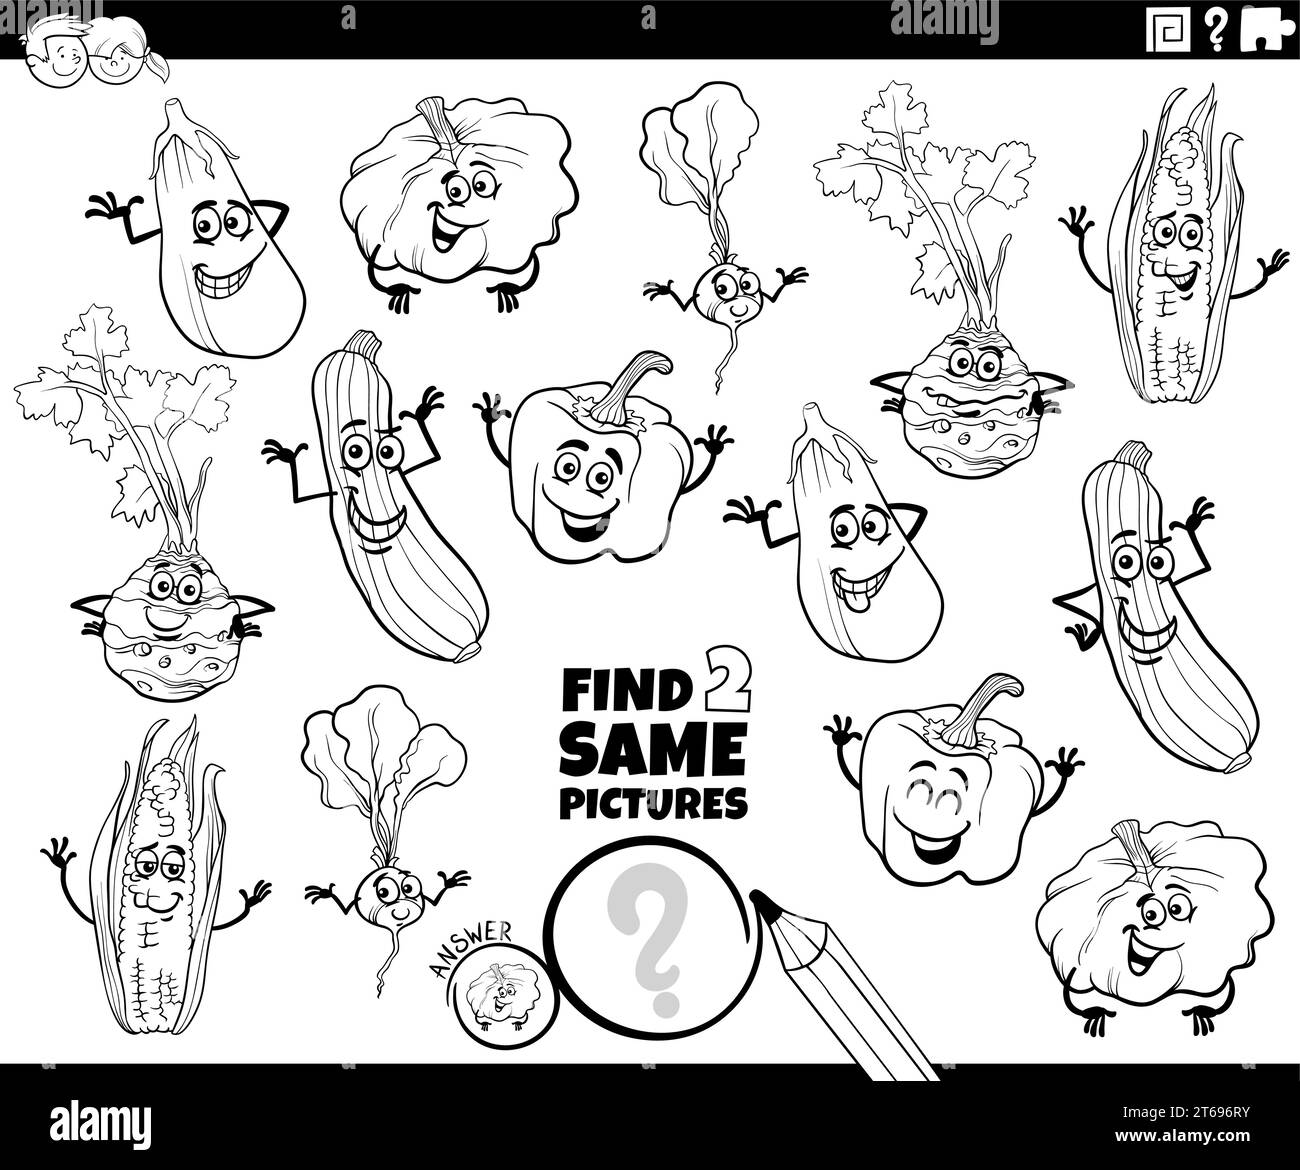 Illustrazione di cartoni animati che mostra come trovare due immagini stesse attività didattica con la pagina da colorare dei personaggi vegetali Illustrazione Vettoriale